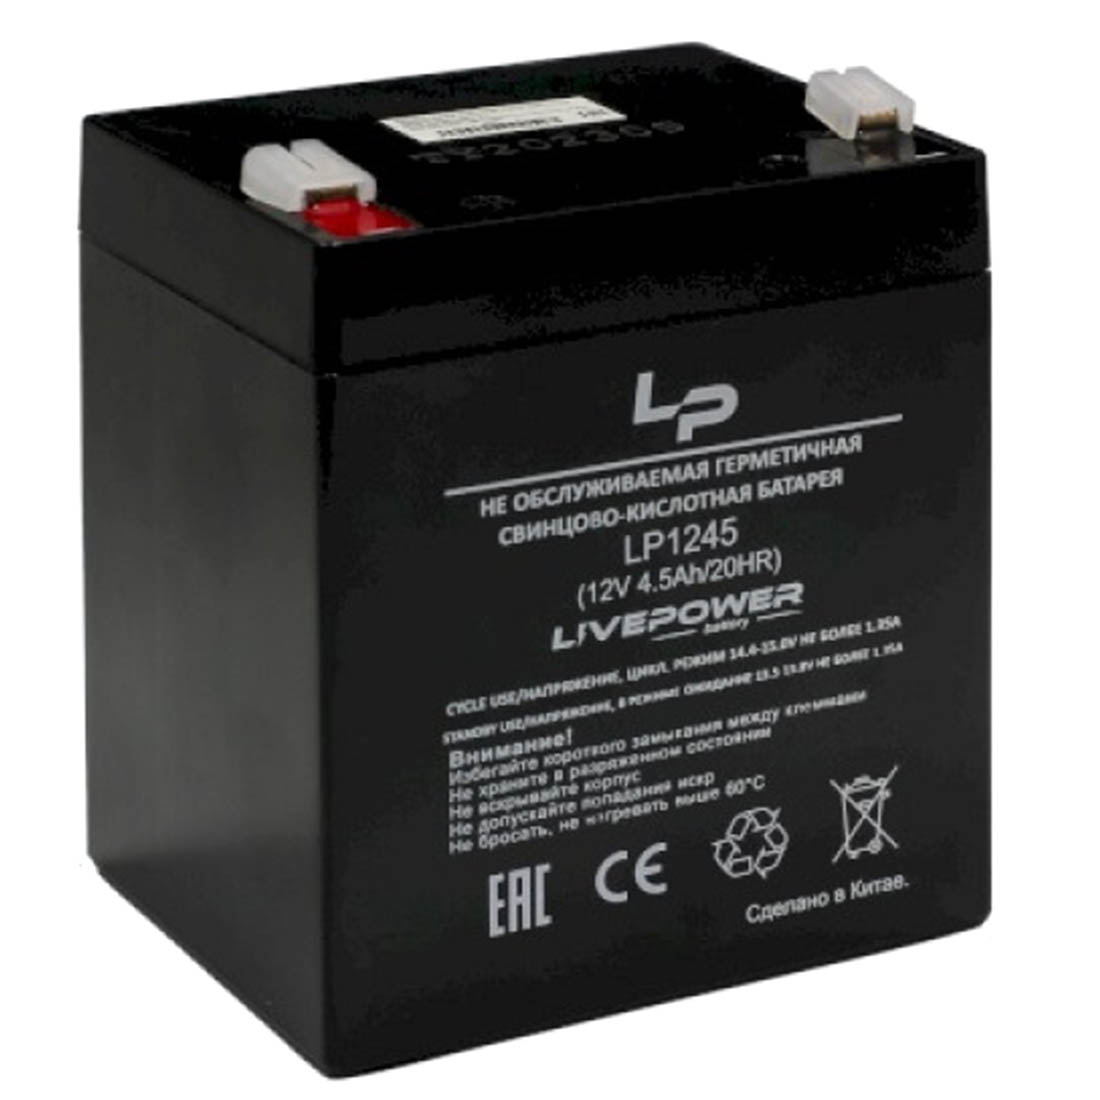 Аккумулятор свинцово кислотный Live Power LP1245, 12V, 4.5Ah